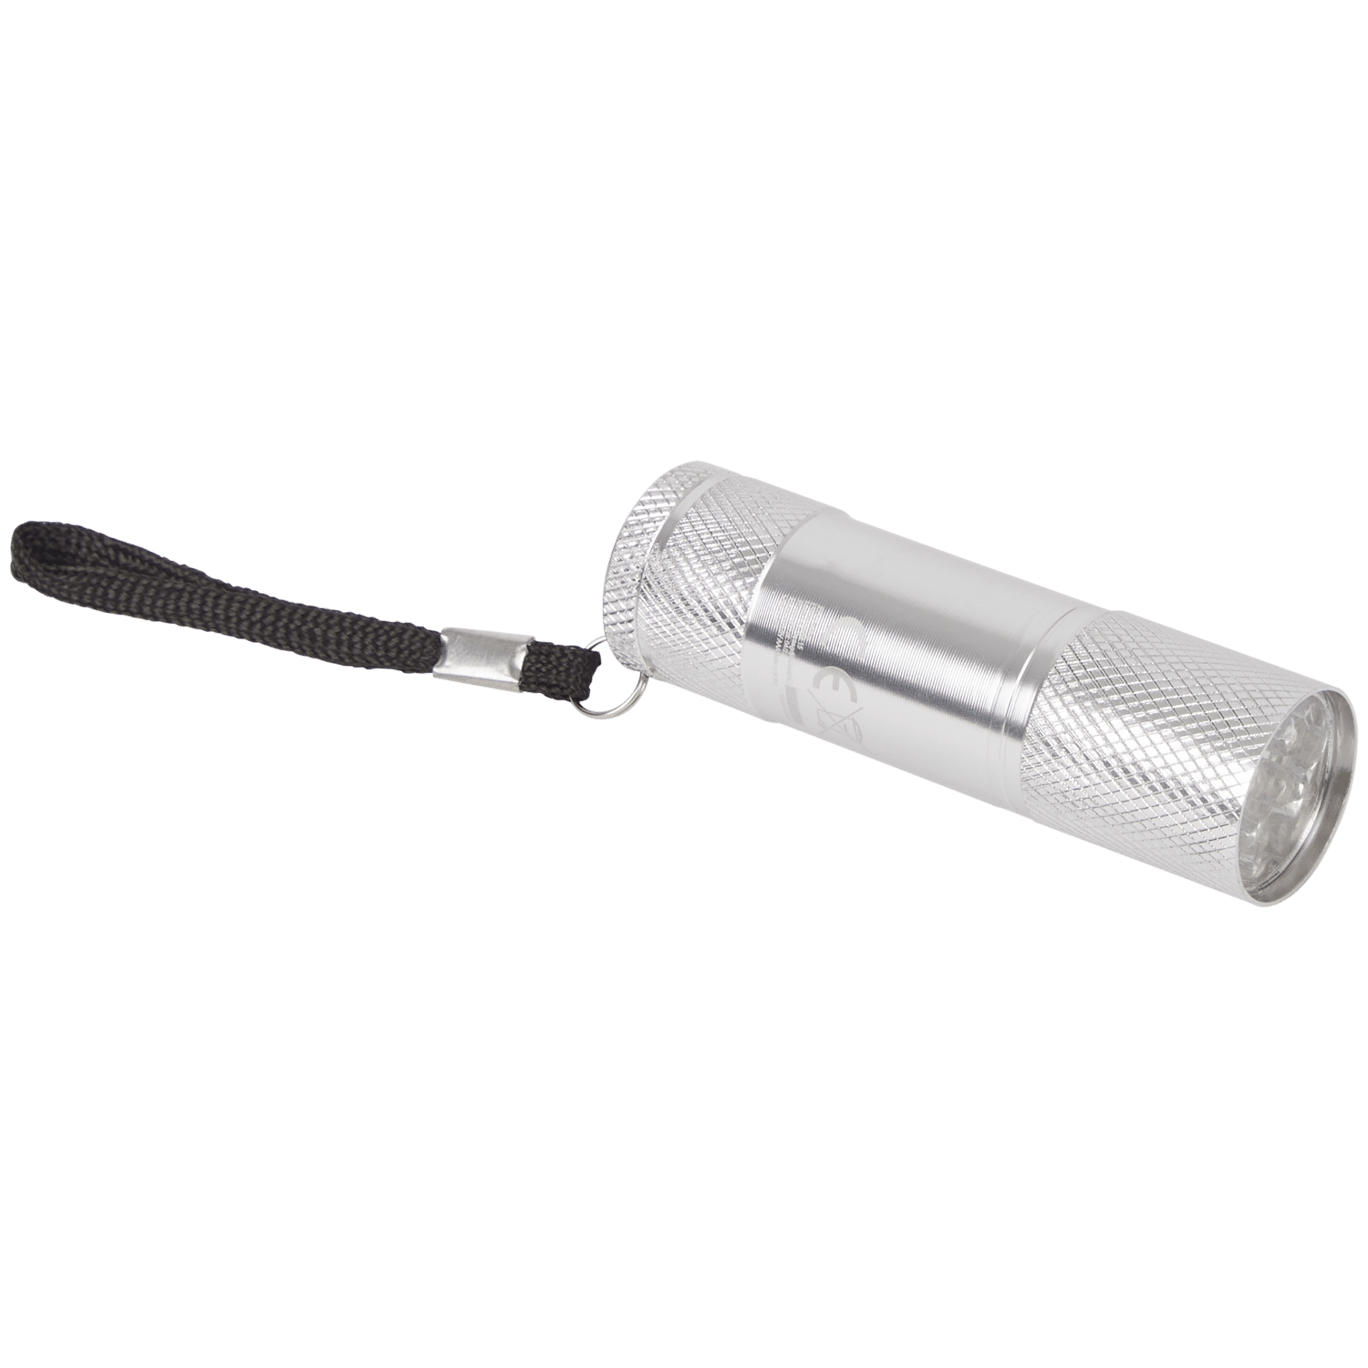 LIVEYOUNG Lampe de poche LED portable extérieure Lampe torche LED